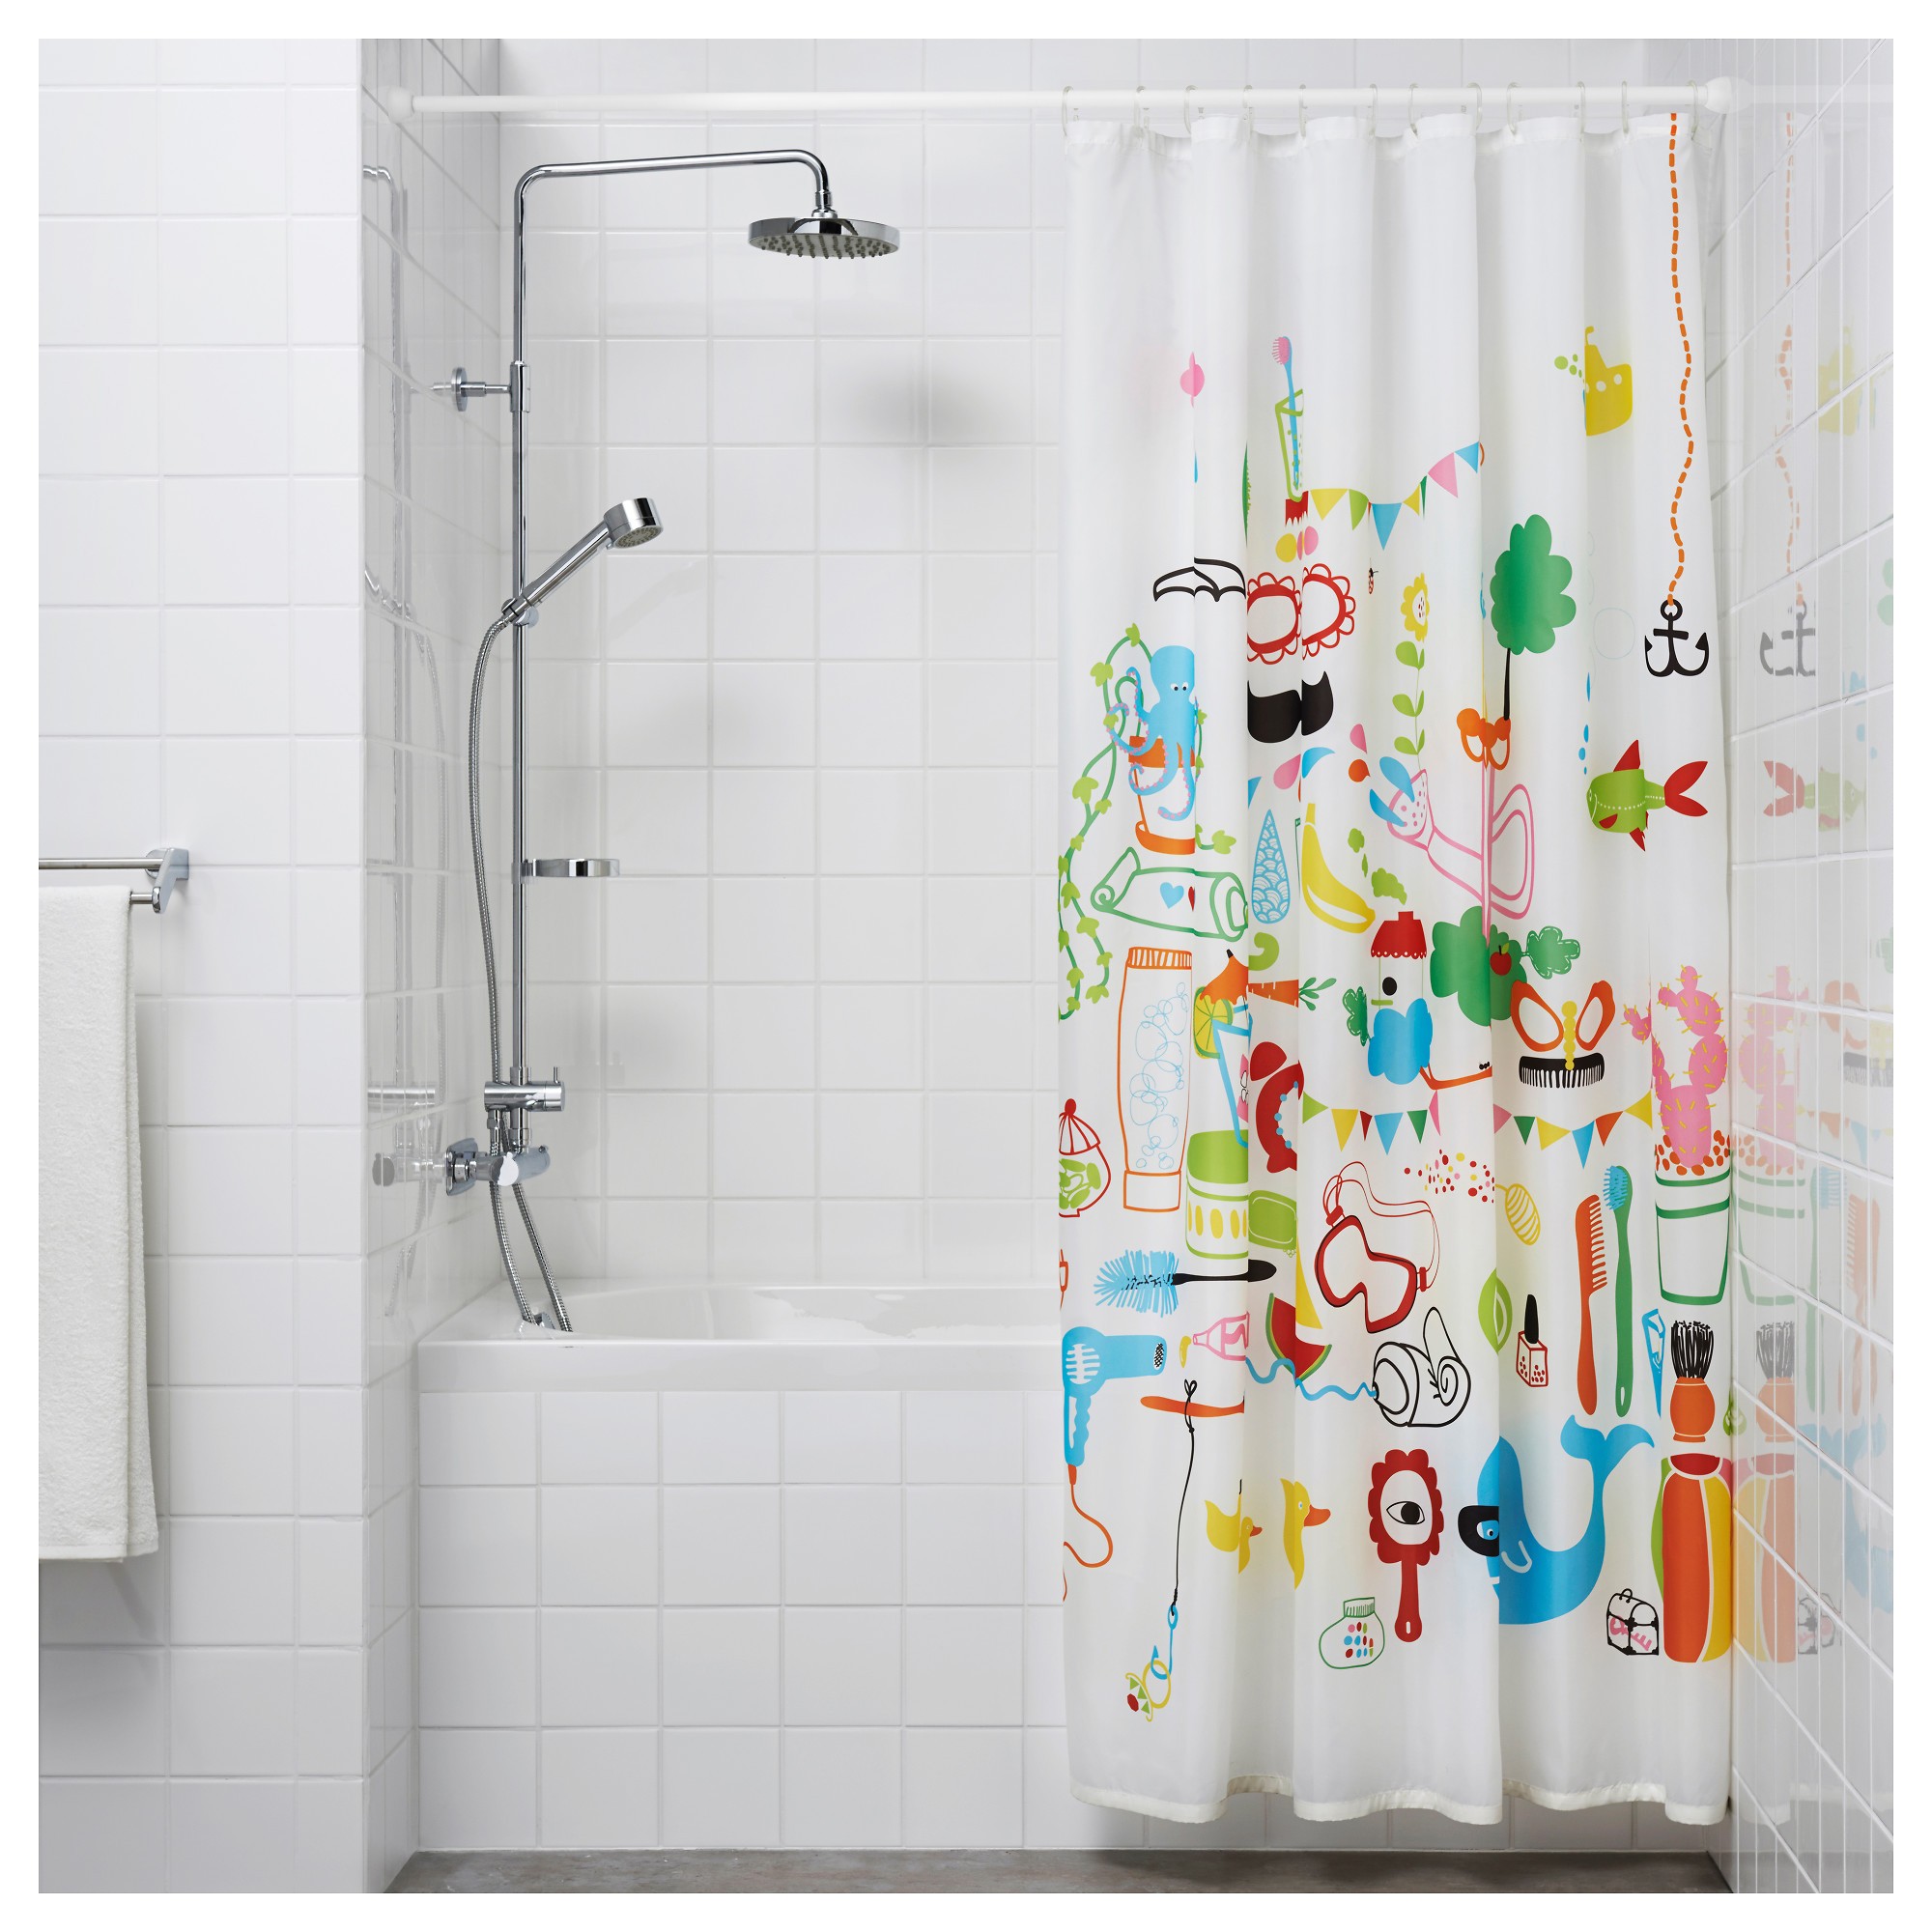 RNT154 rèm nhà tắm mới của IKEA sẽ khiến bạn bất ngờ với thiết kế đột phá và sự tiện ích cao hơn. Với kiểu dáng hiện đại, tươi trẻ, và các khả năng điều chỉnh, bạn có thể tùy chỉnh cho phù hợp với phòng tắm của mình. Xem ngay hình ảnh để chọn cho mình sản phẩm phù hợp nhất nhé!